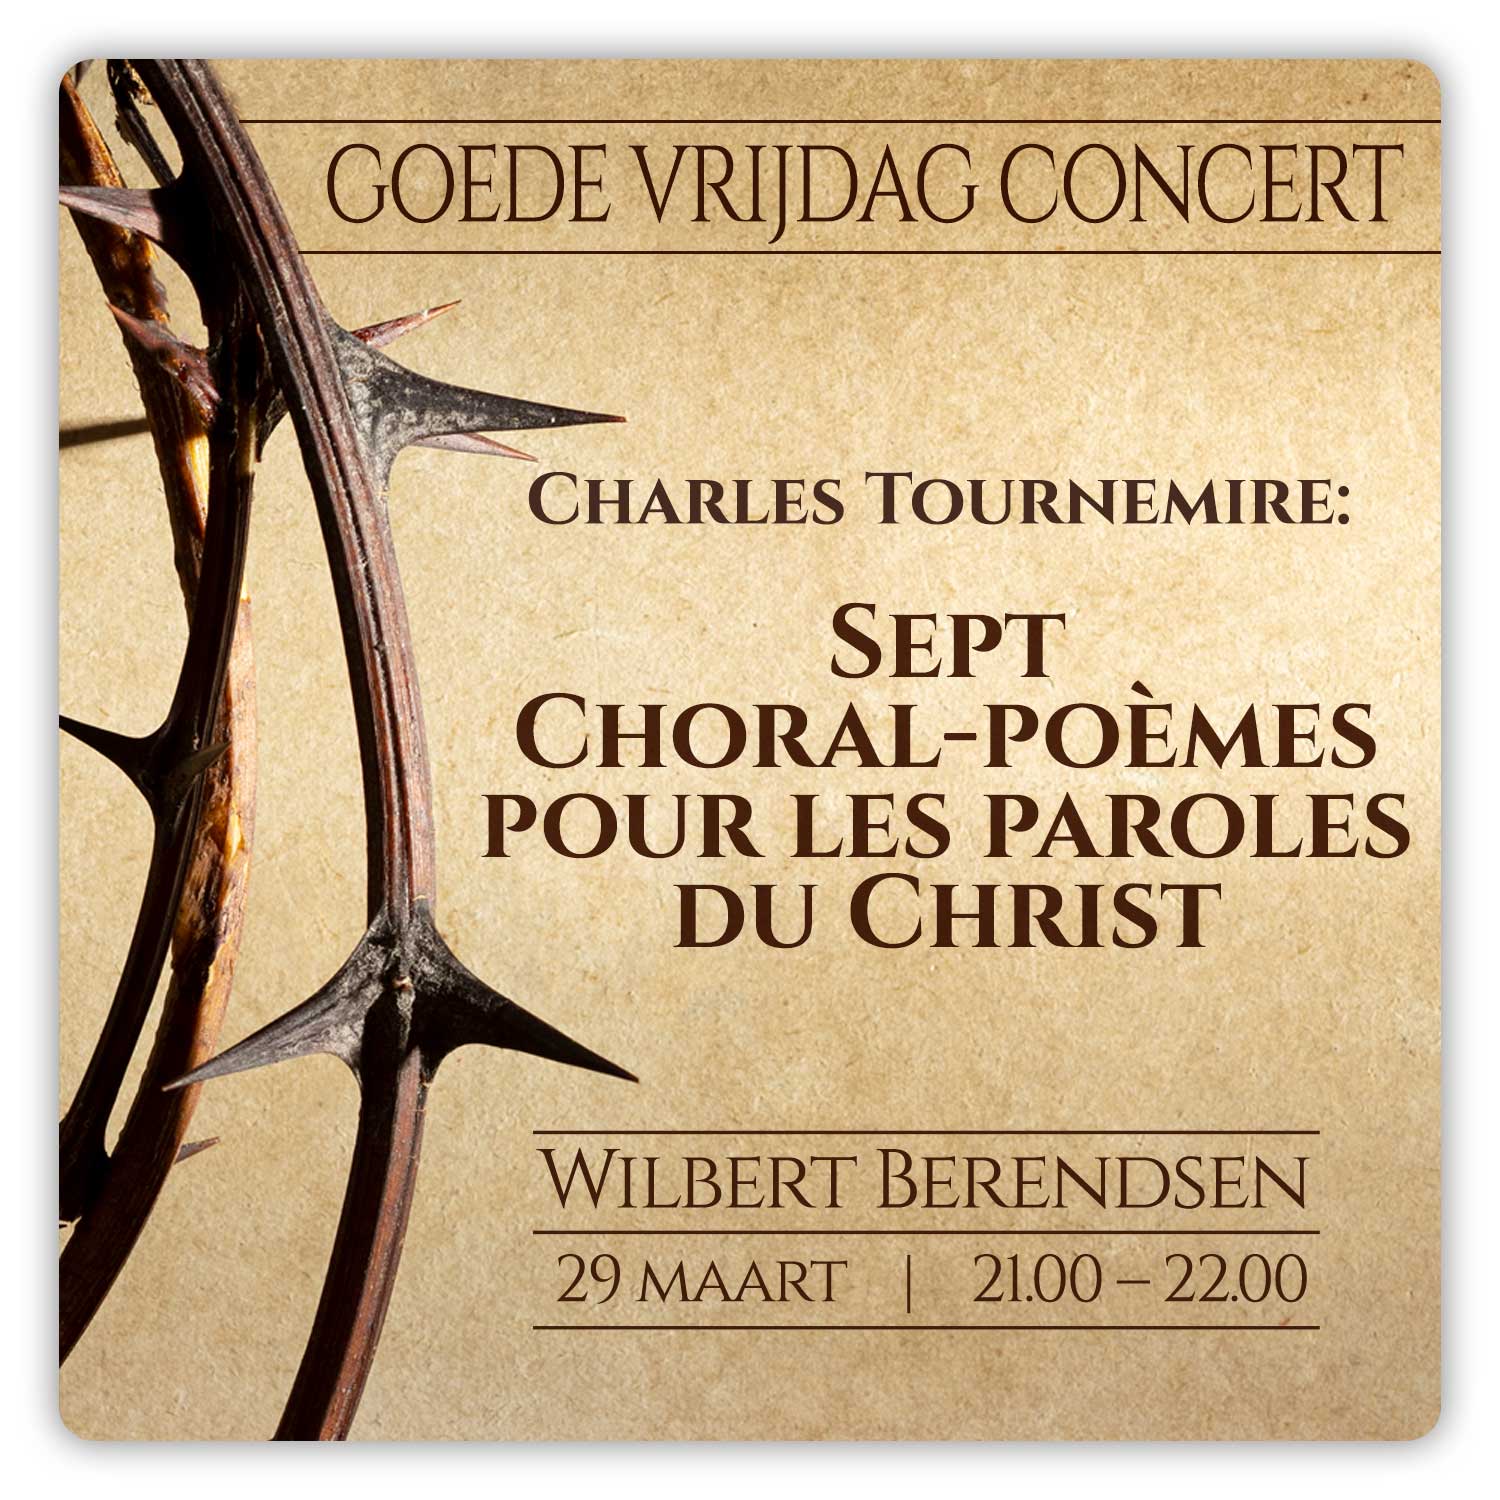 goede vrijdag concert Charles Tournemire: Sept Choral- poèmes pour les paroles du Christ